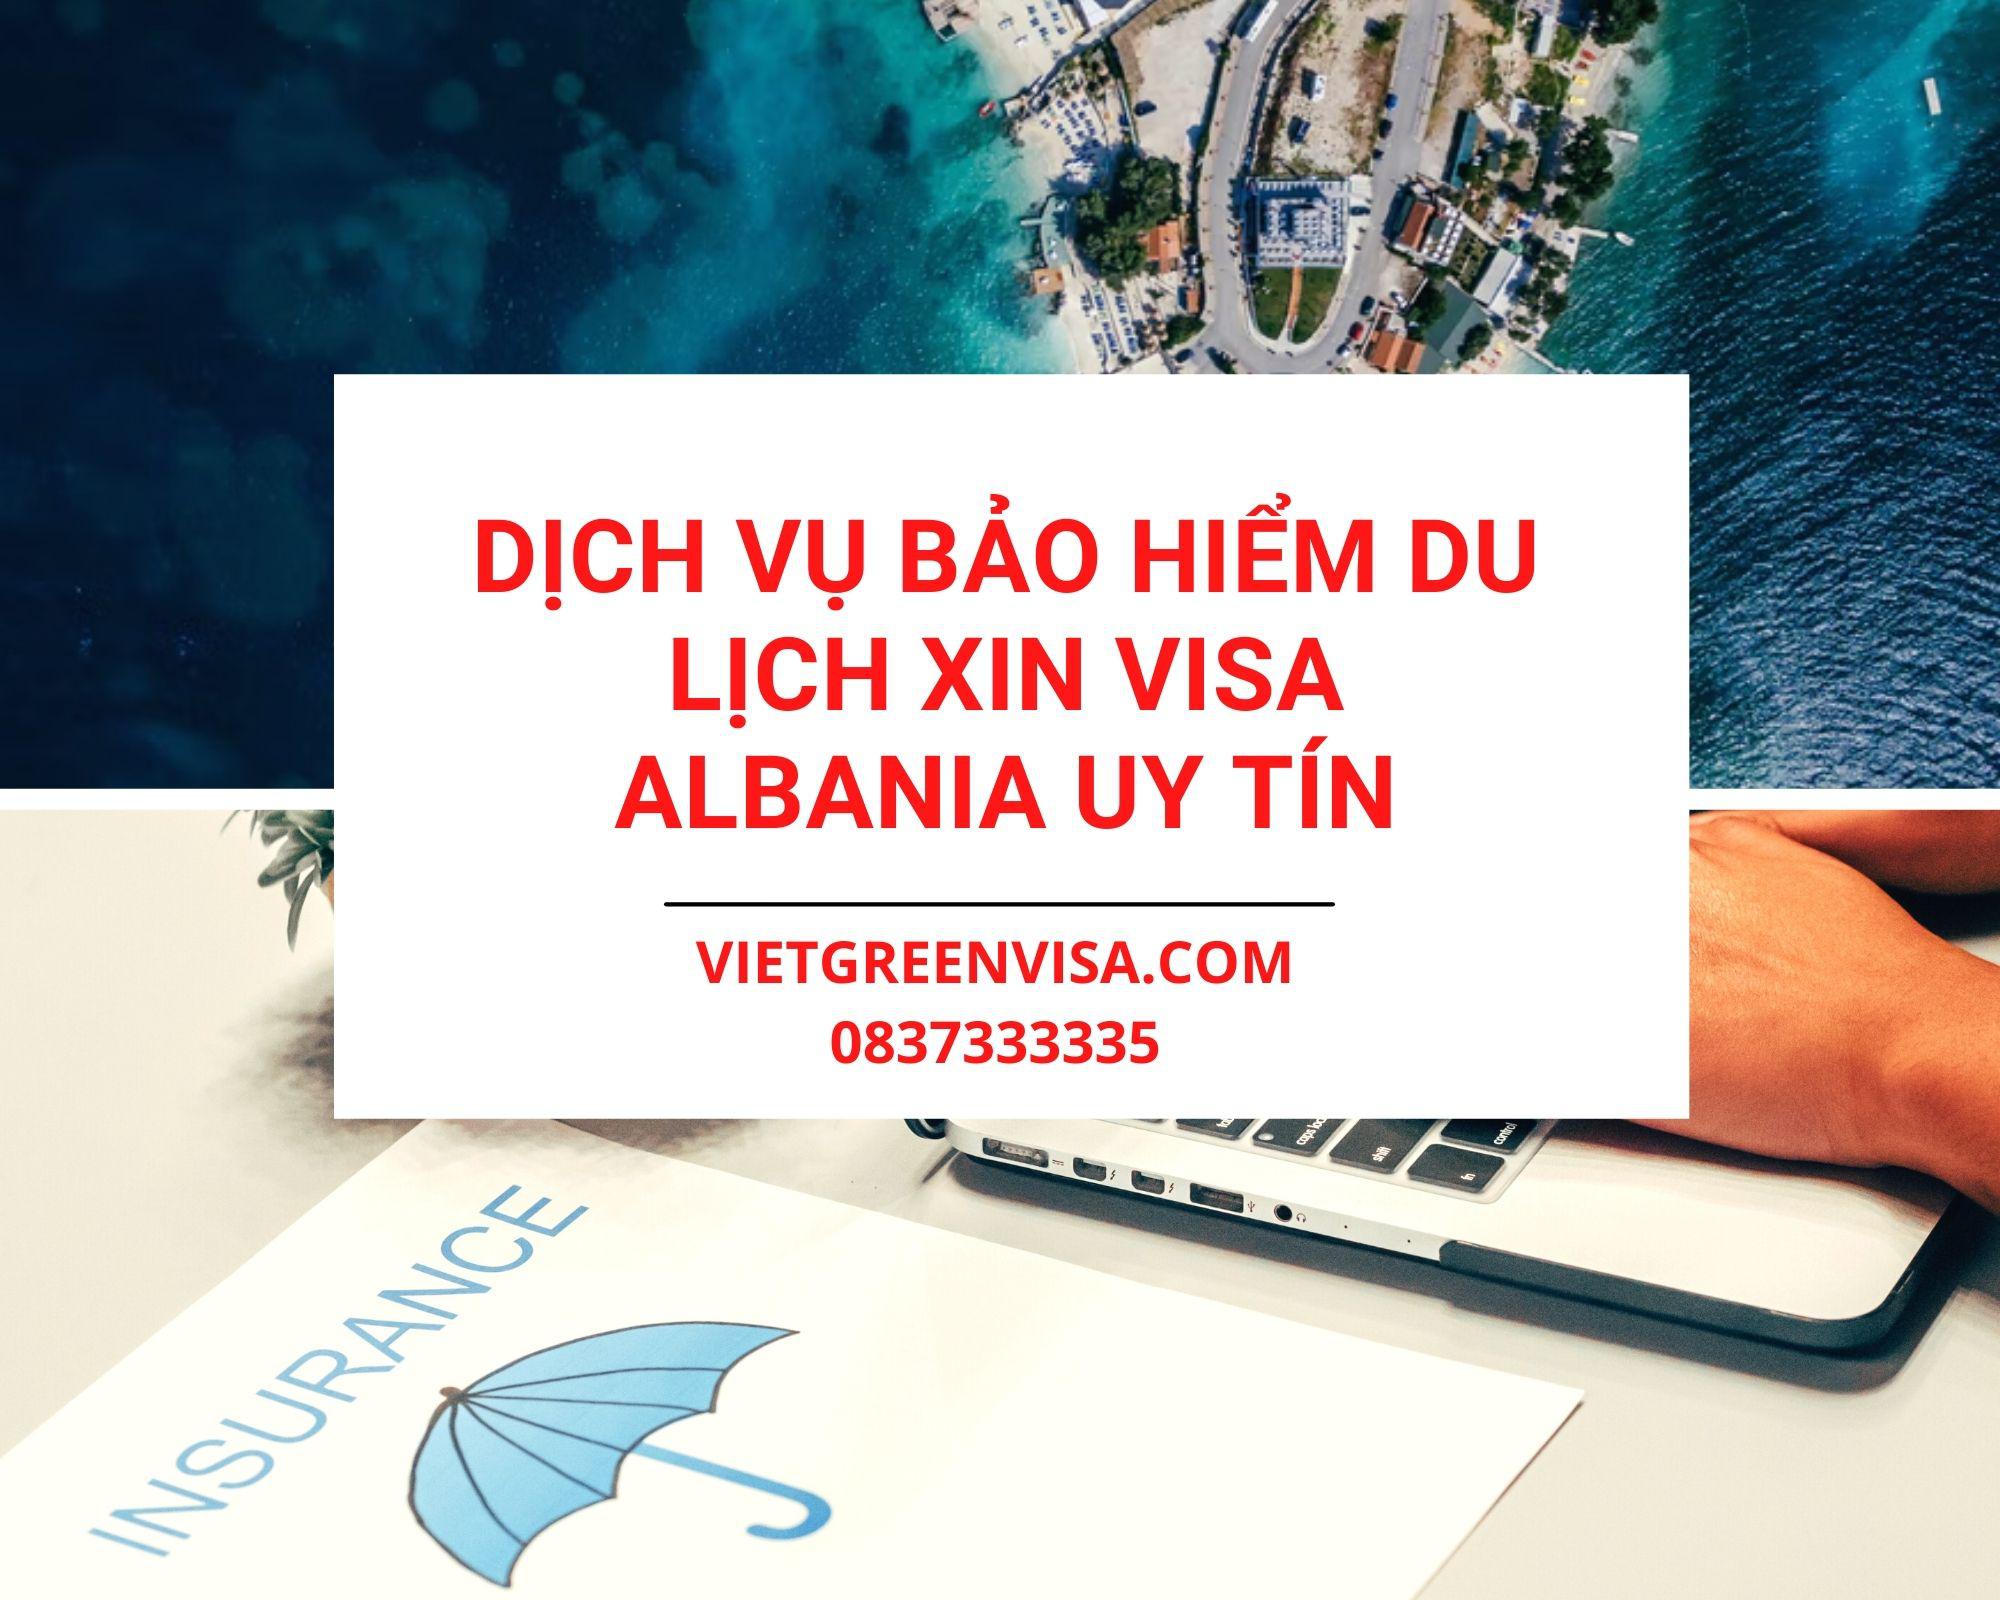 Viet Green Visa, đặt lịch hẹn xin visa Albania, visa Albania